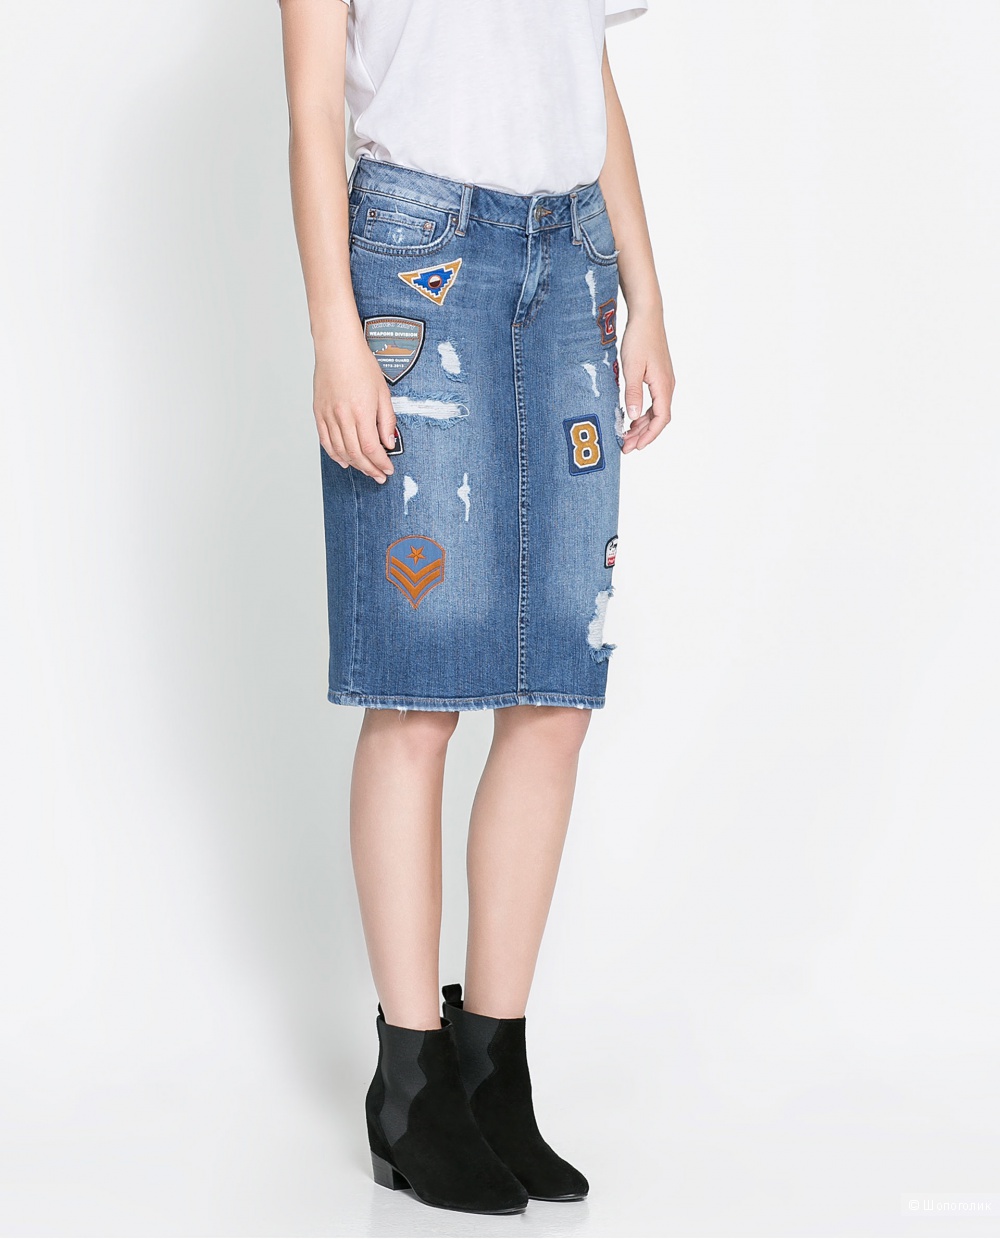 ZARA джинсовая юбка размер S